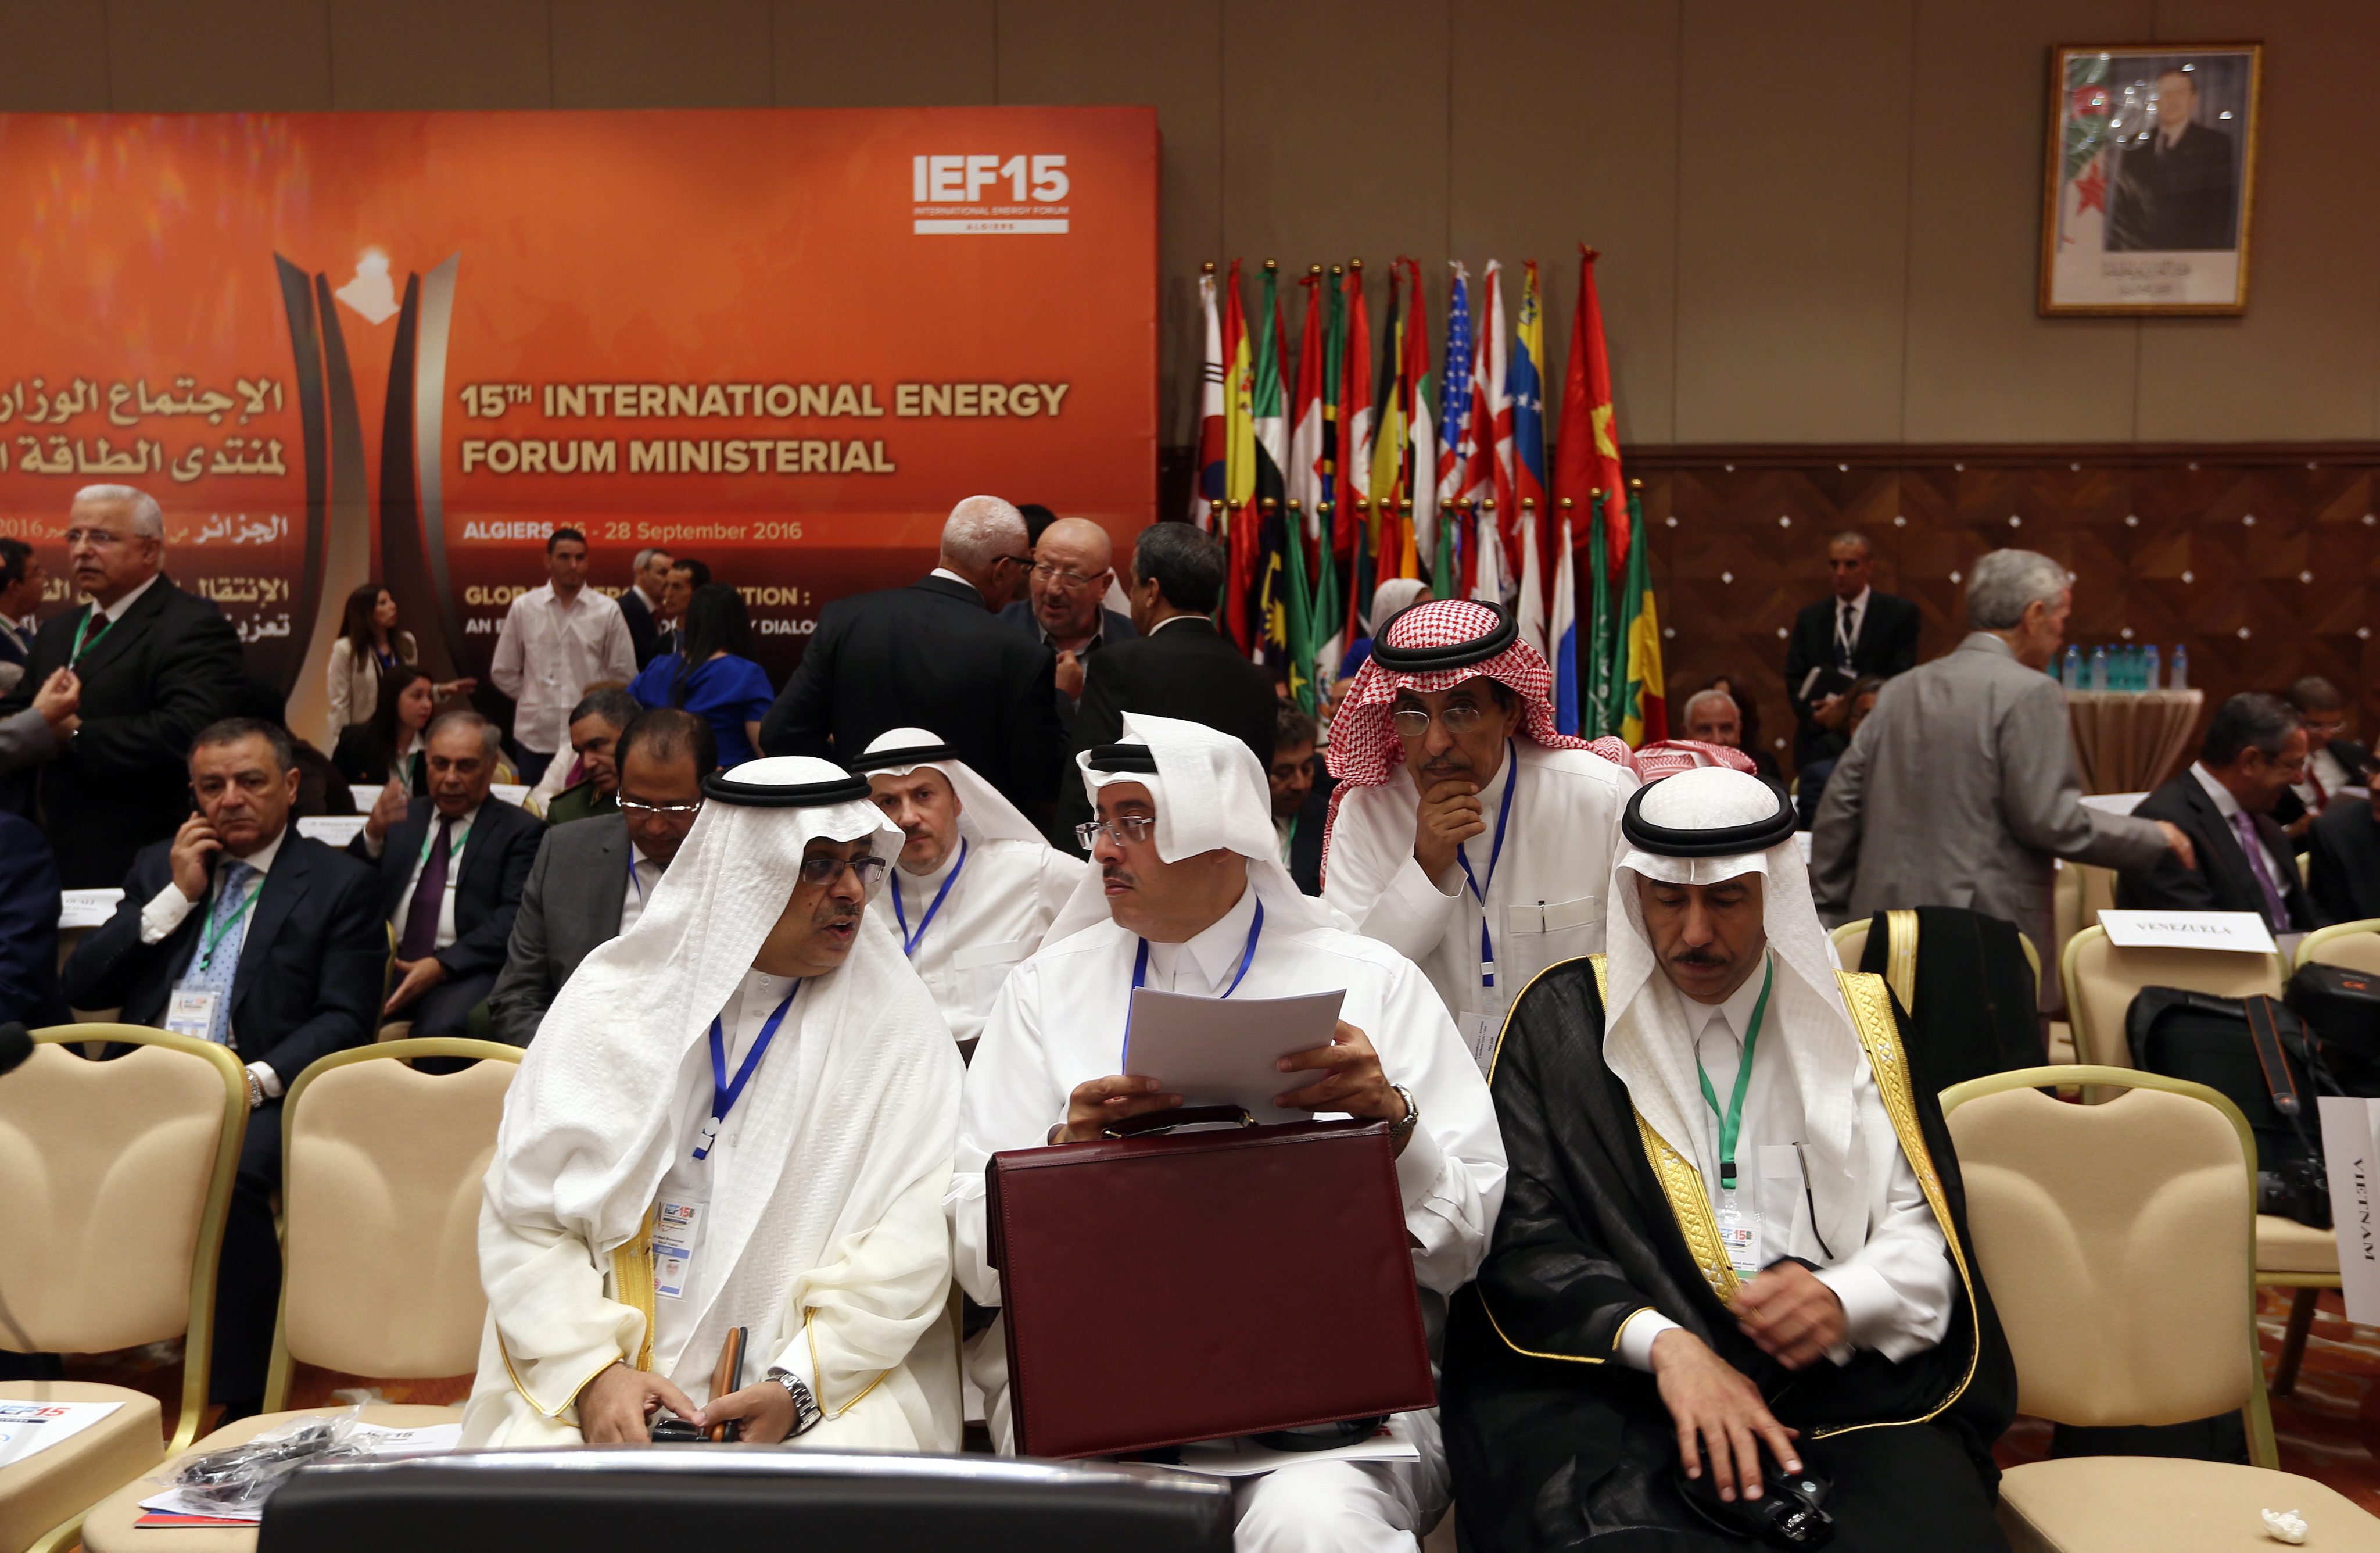 De OPEC-landen hebben woensdag een akkoord gesloten over de inperking van hun olieproductie. Dat meldden diverse media op basis van ingewijden.